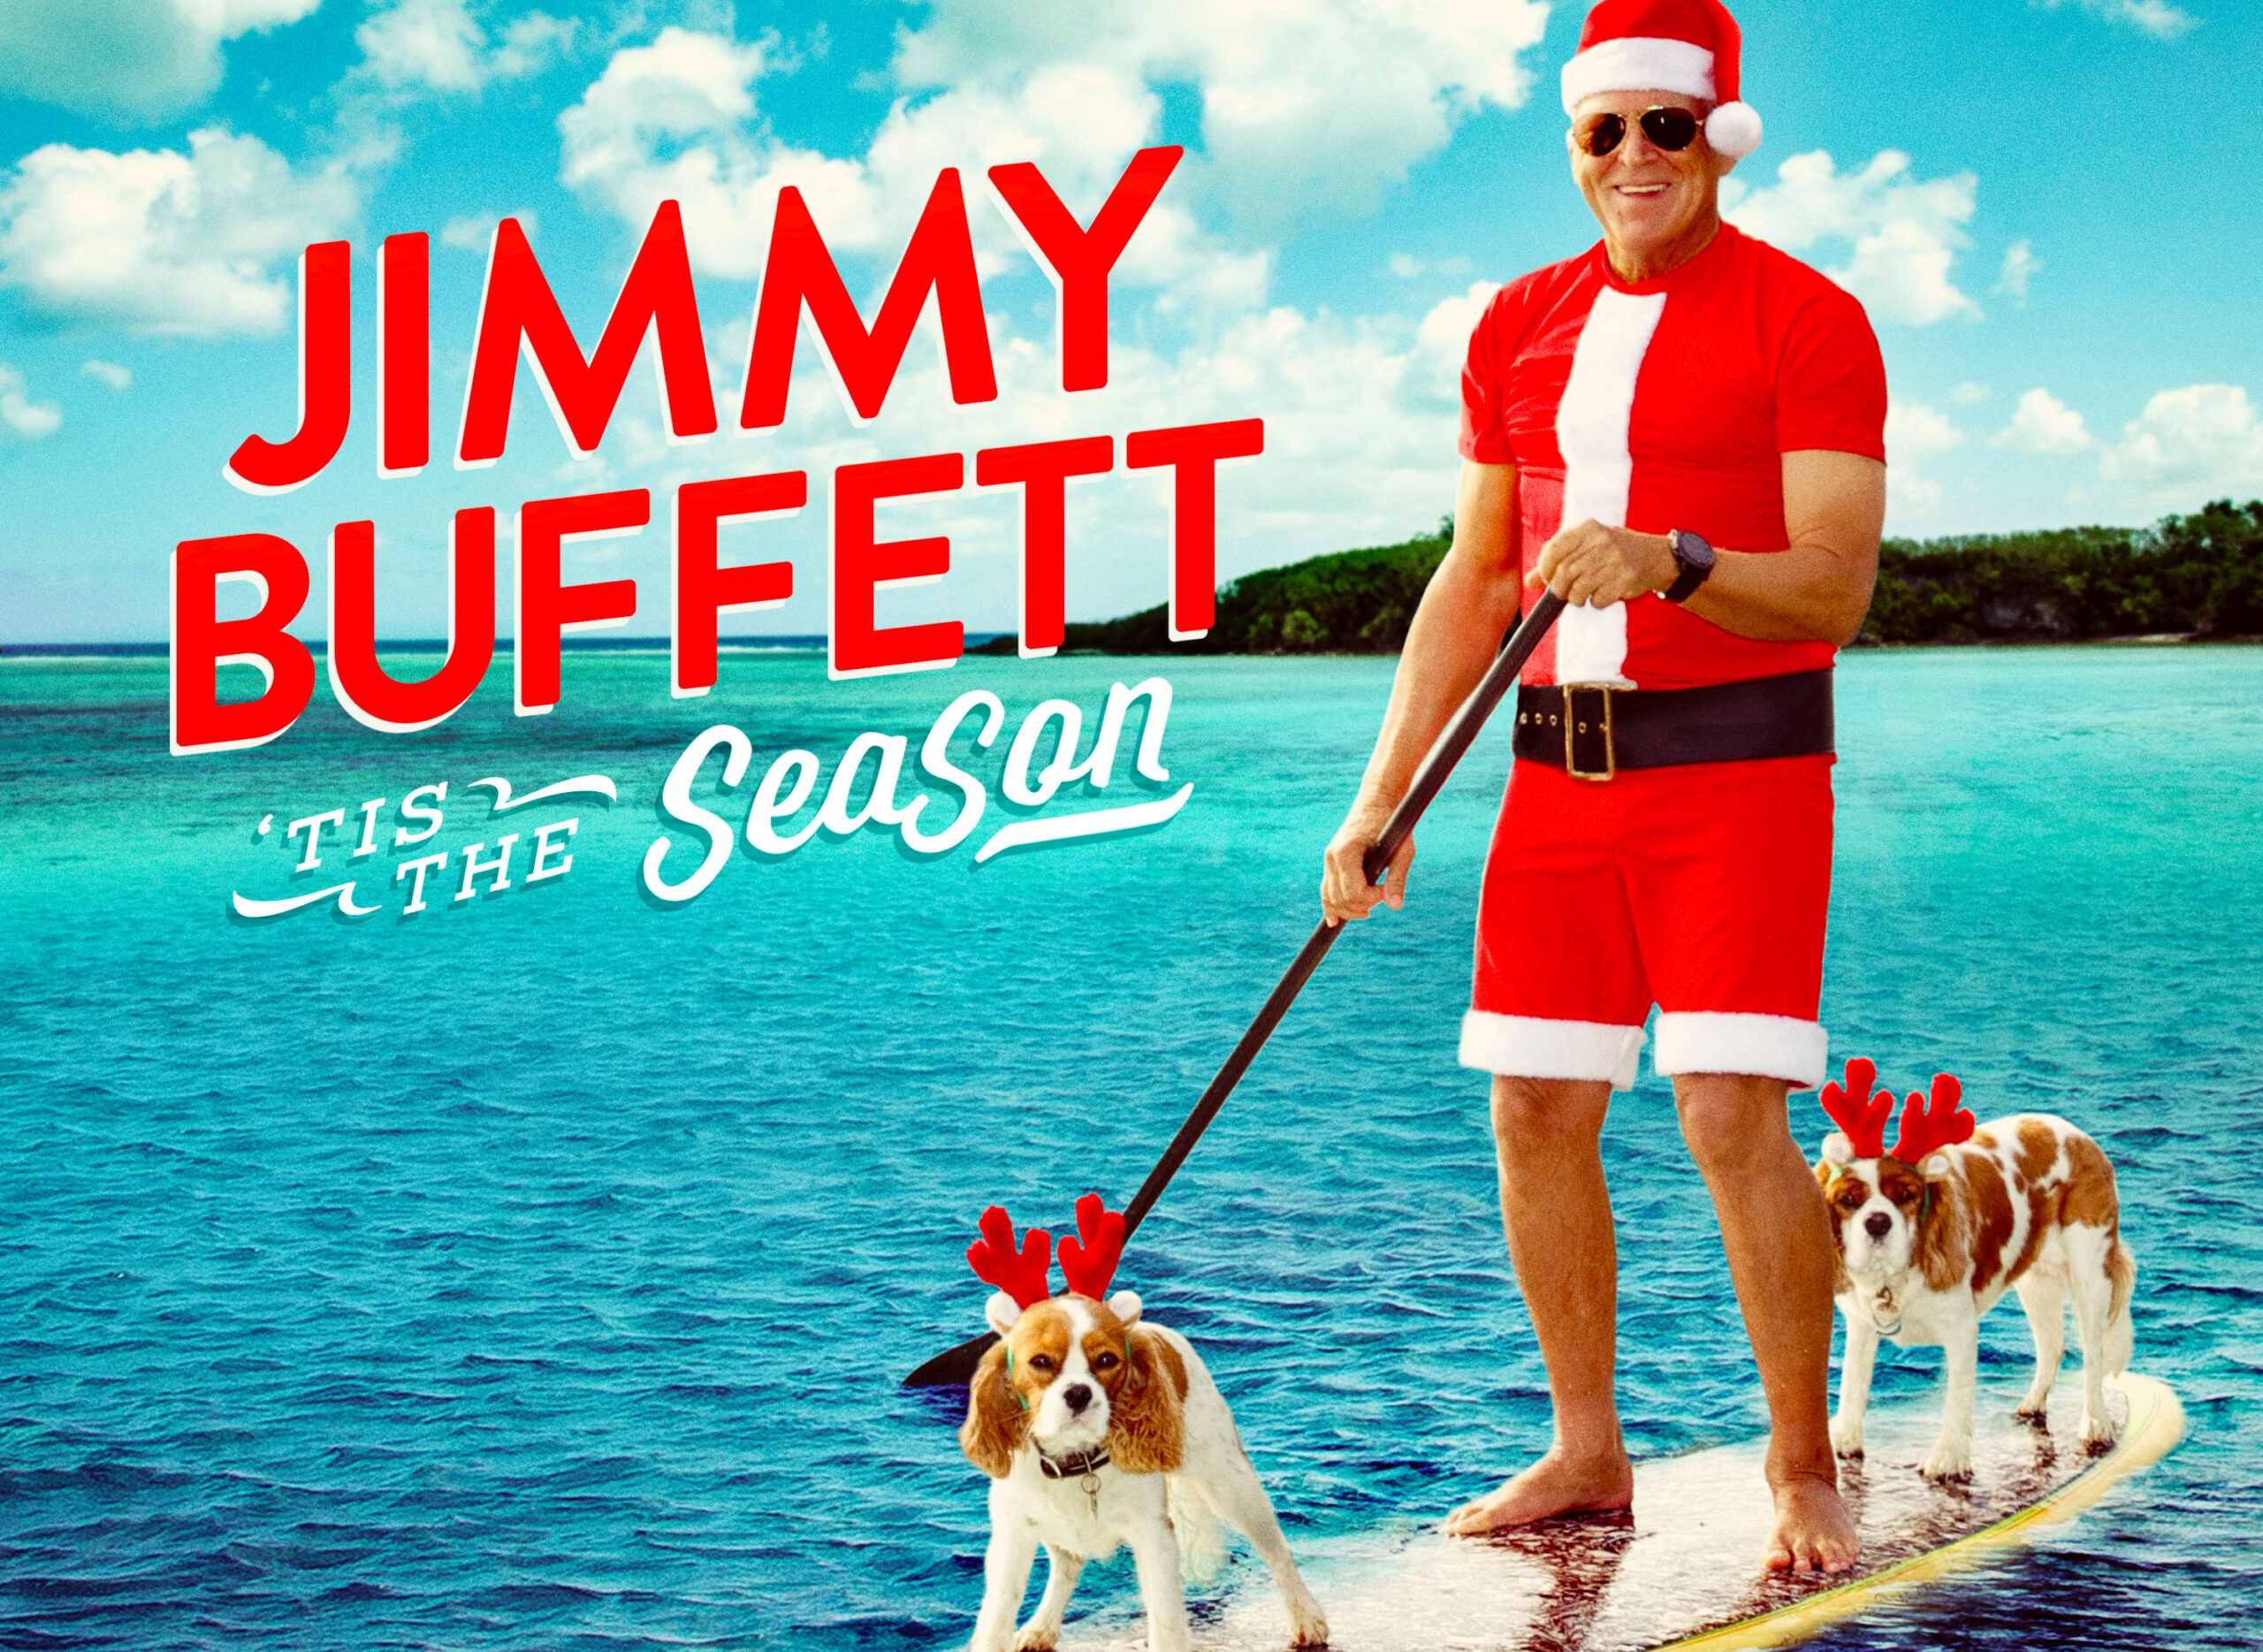 Sintonícenos mañana: Pista 5 Los doce días de Navidad (versión Parrothead) del nuevo álbum navideño de Jimmy Buffett.